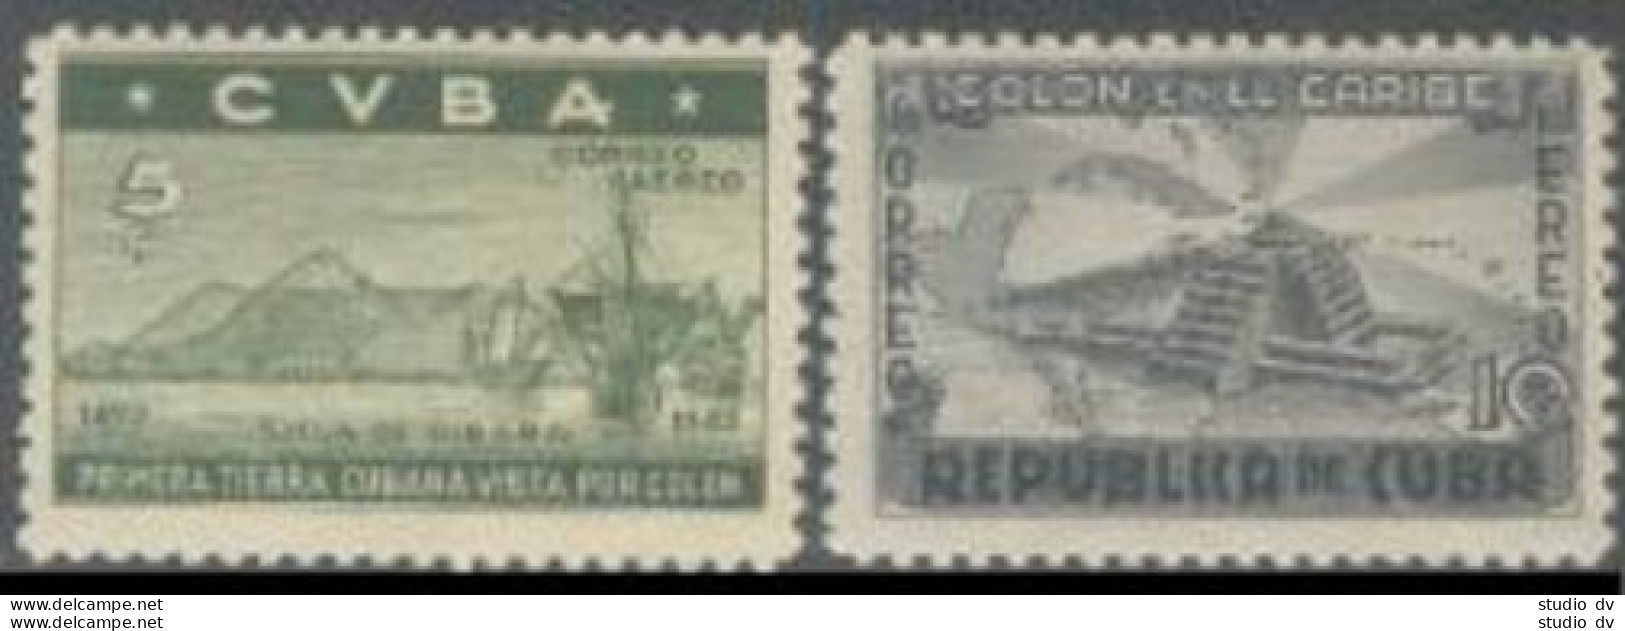 Cuba 387-391,C36-37,hinged.Mi 190-196.Columbus,Bartolome De Las Casas,Lighthouse - Nuovi